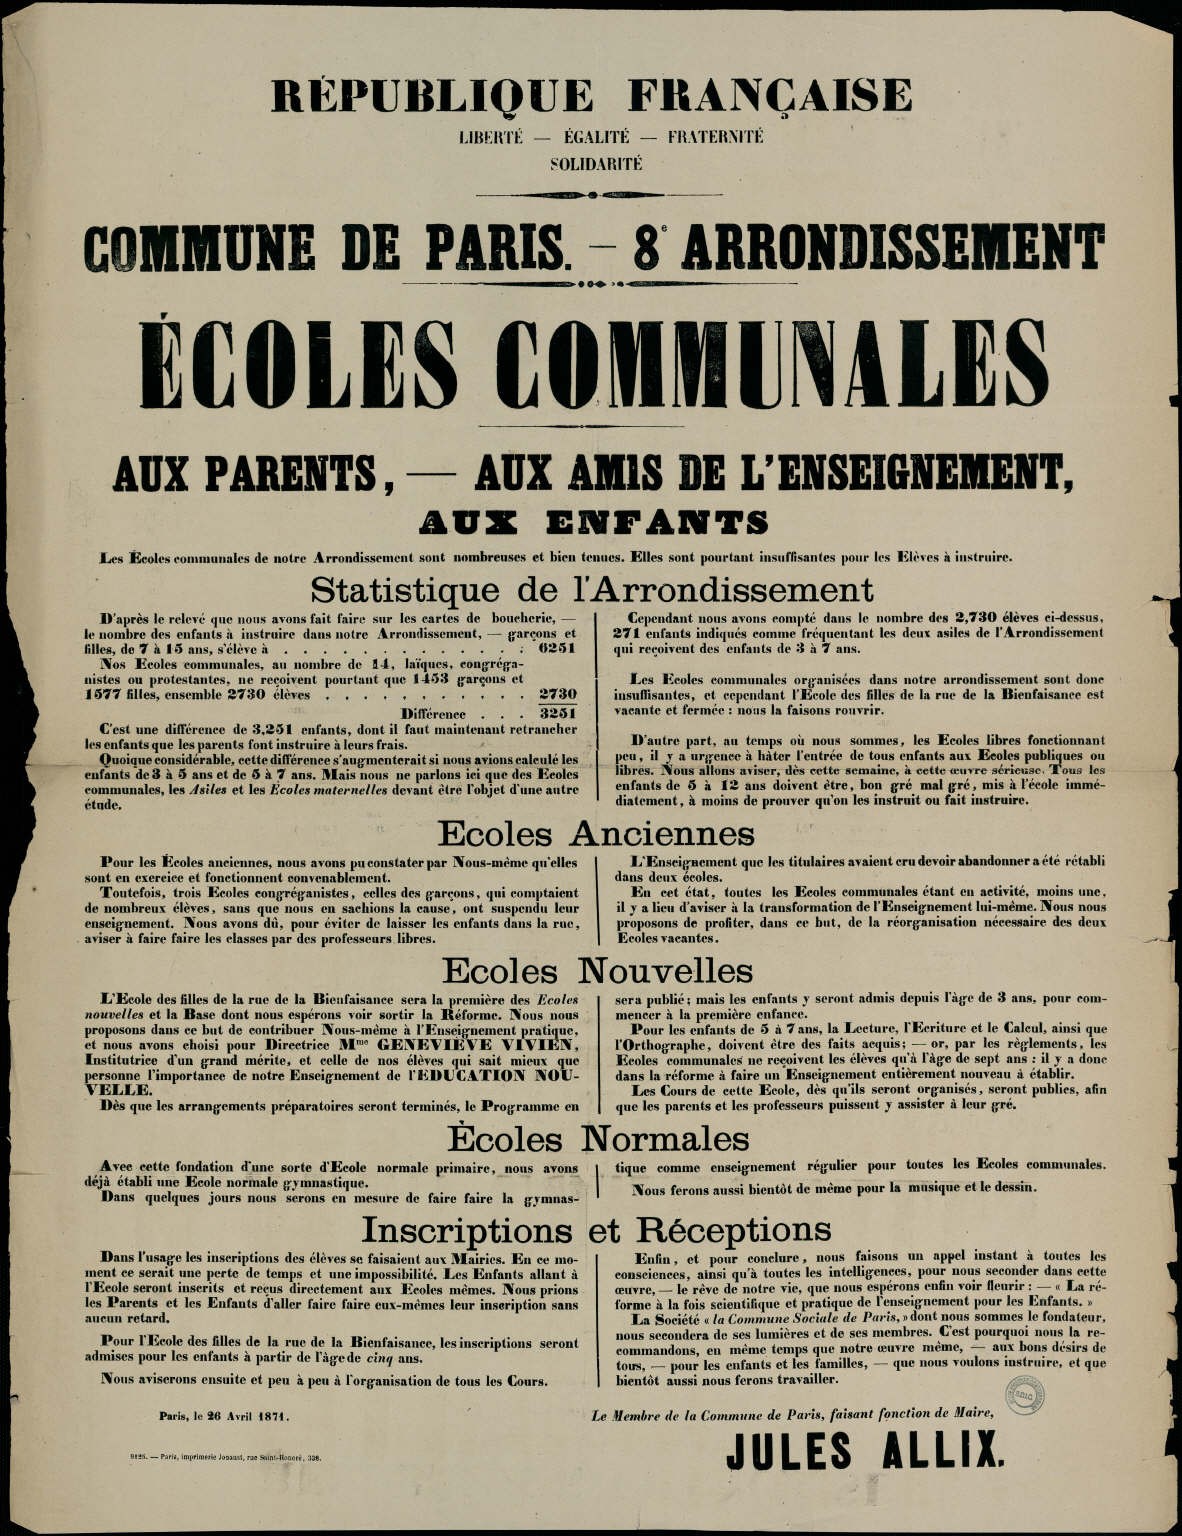 Affiche de la Commune de Paris, 26 avril 1871, Paris VIIIe, signée Jules Allix (source : La Contemporaine – Nanterre / argonnaute.parisnanterre.fr)